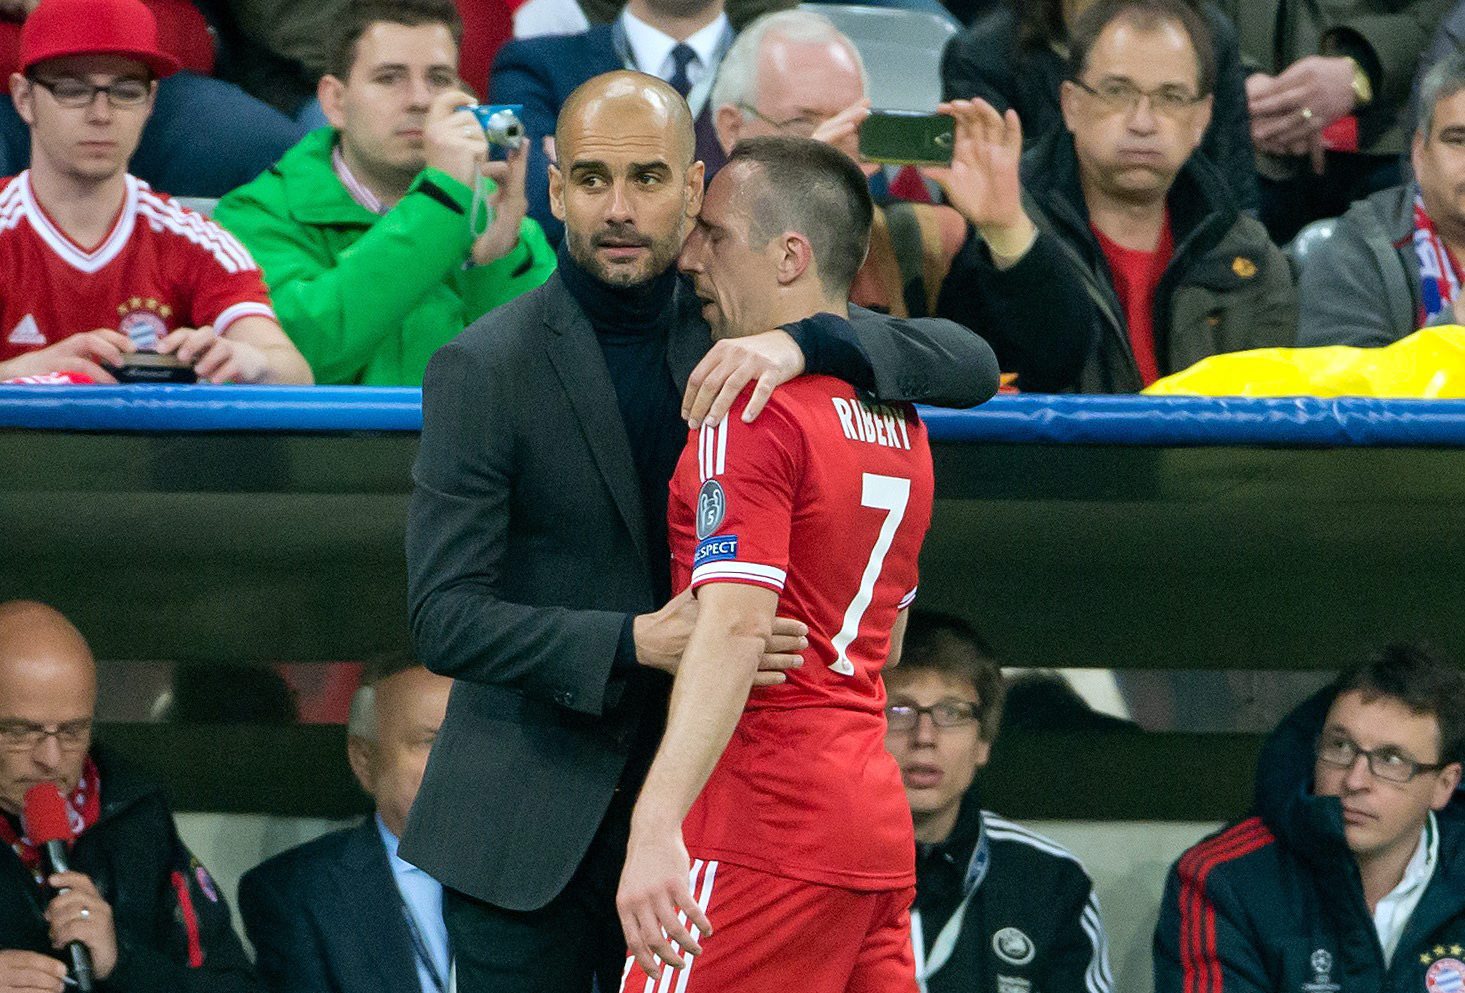 As palavras nada simpáticas de Ribéry sobre Guardiola